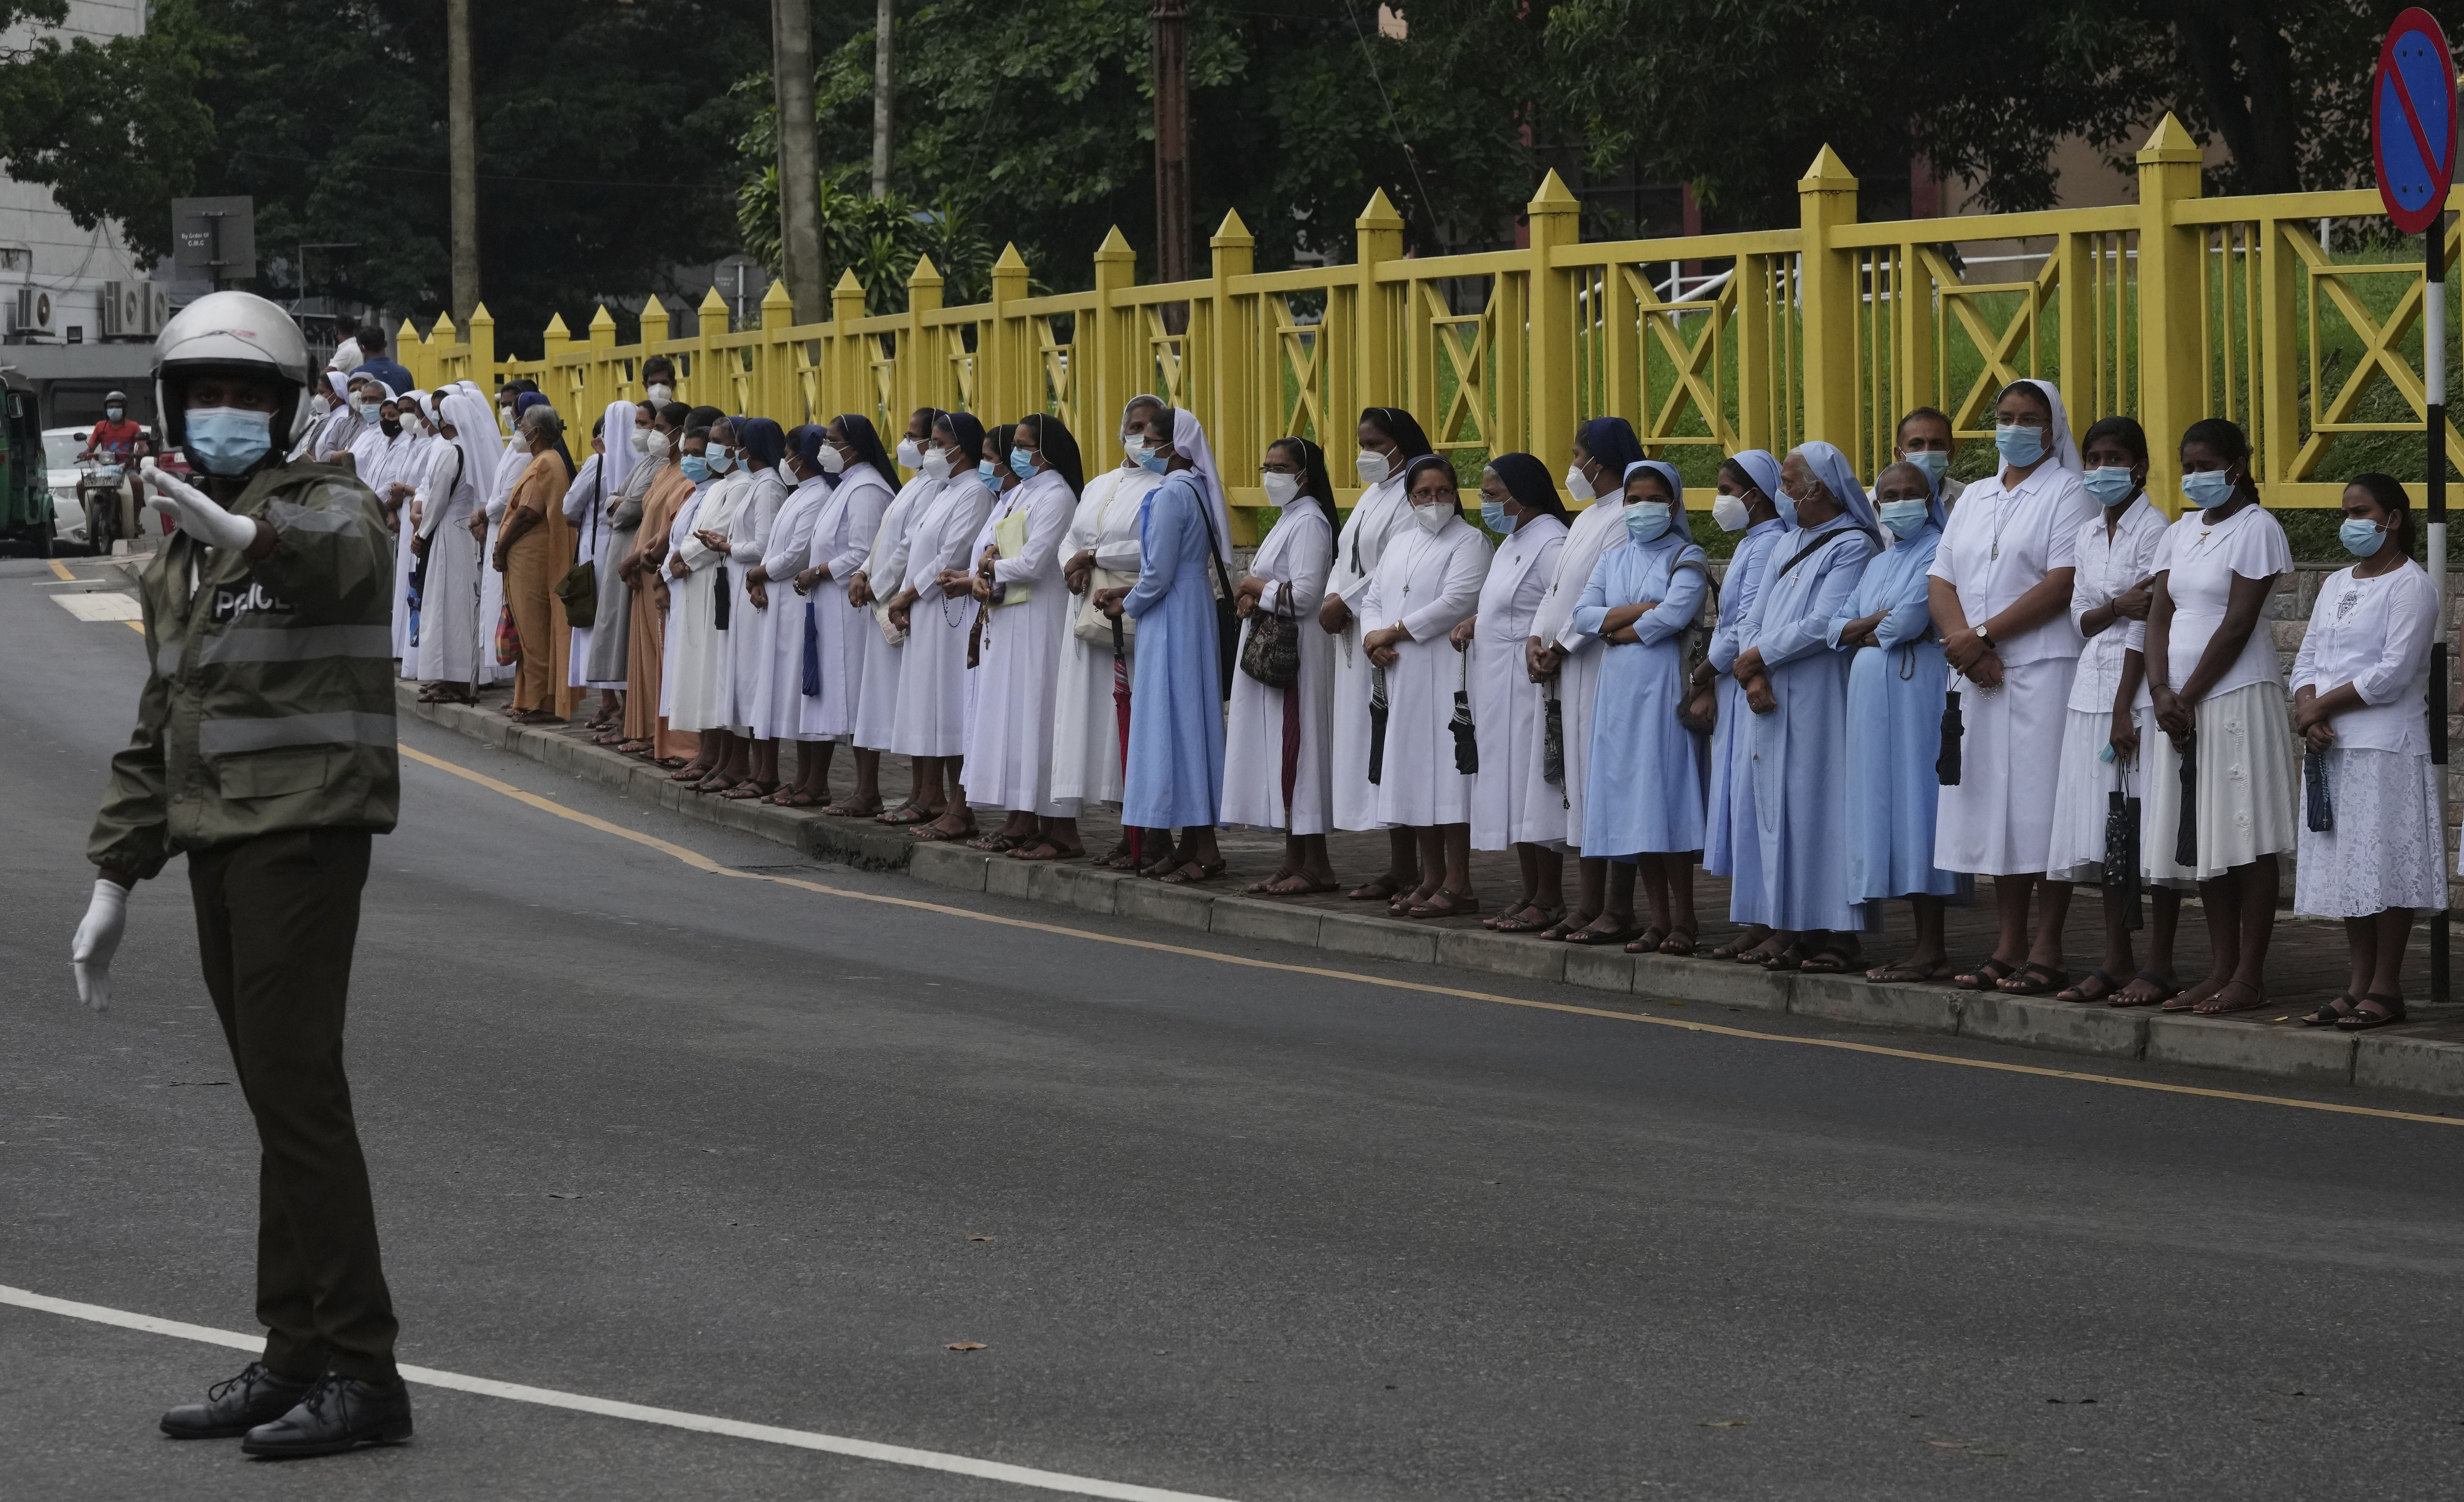 Dags för rättegång efter bombdåden i Sri Lanka